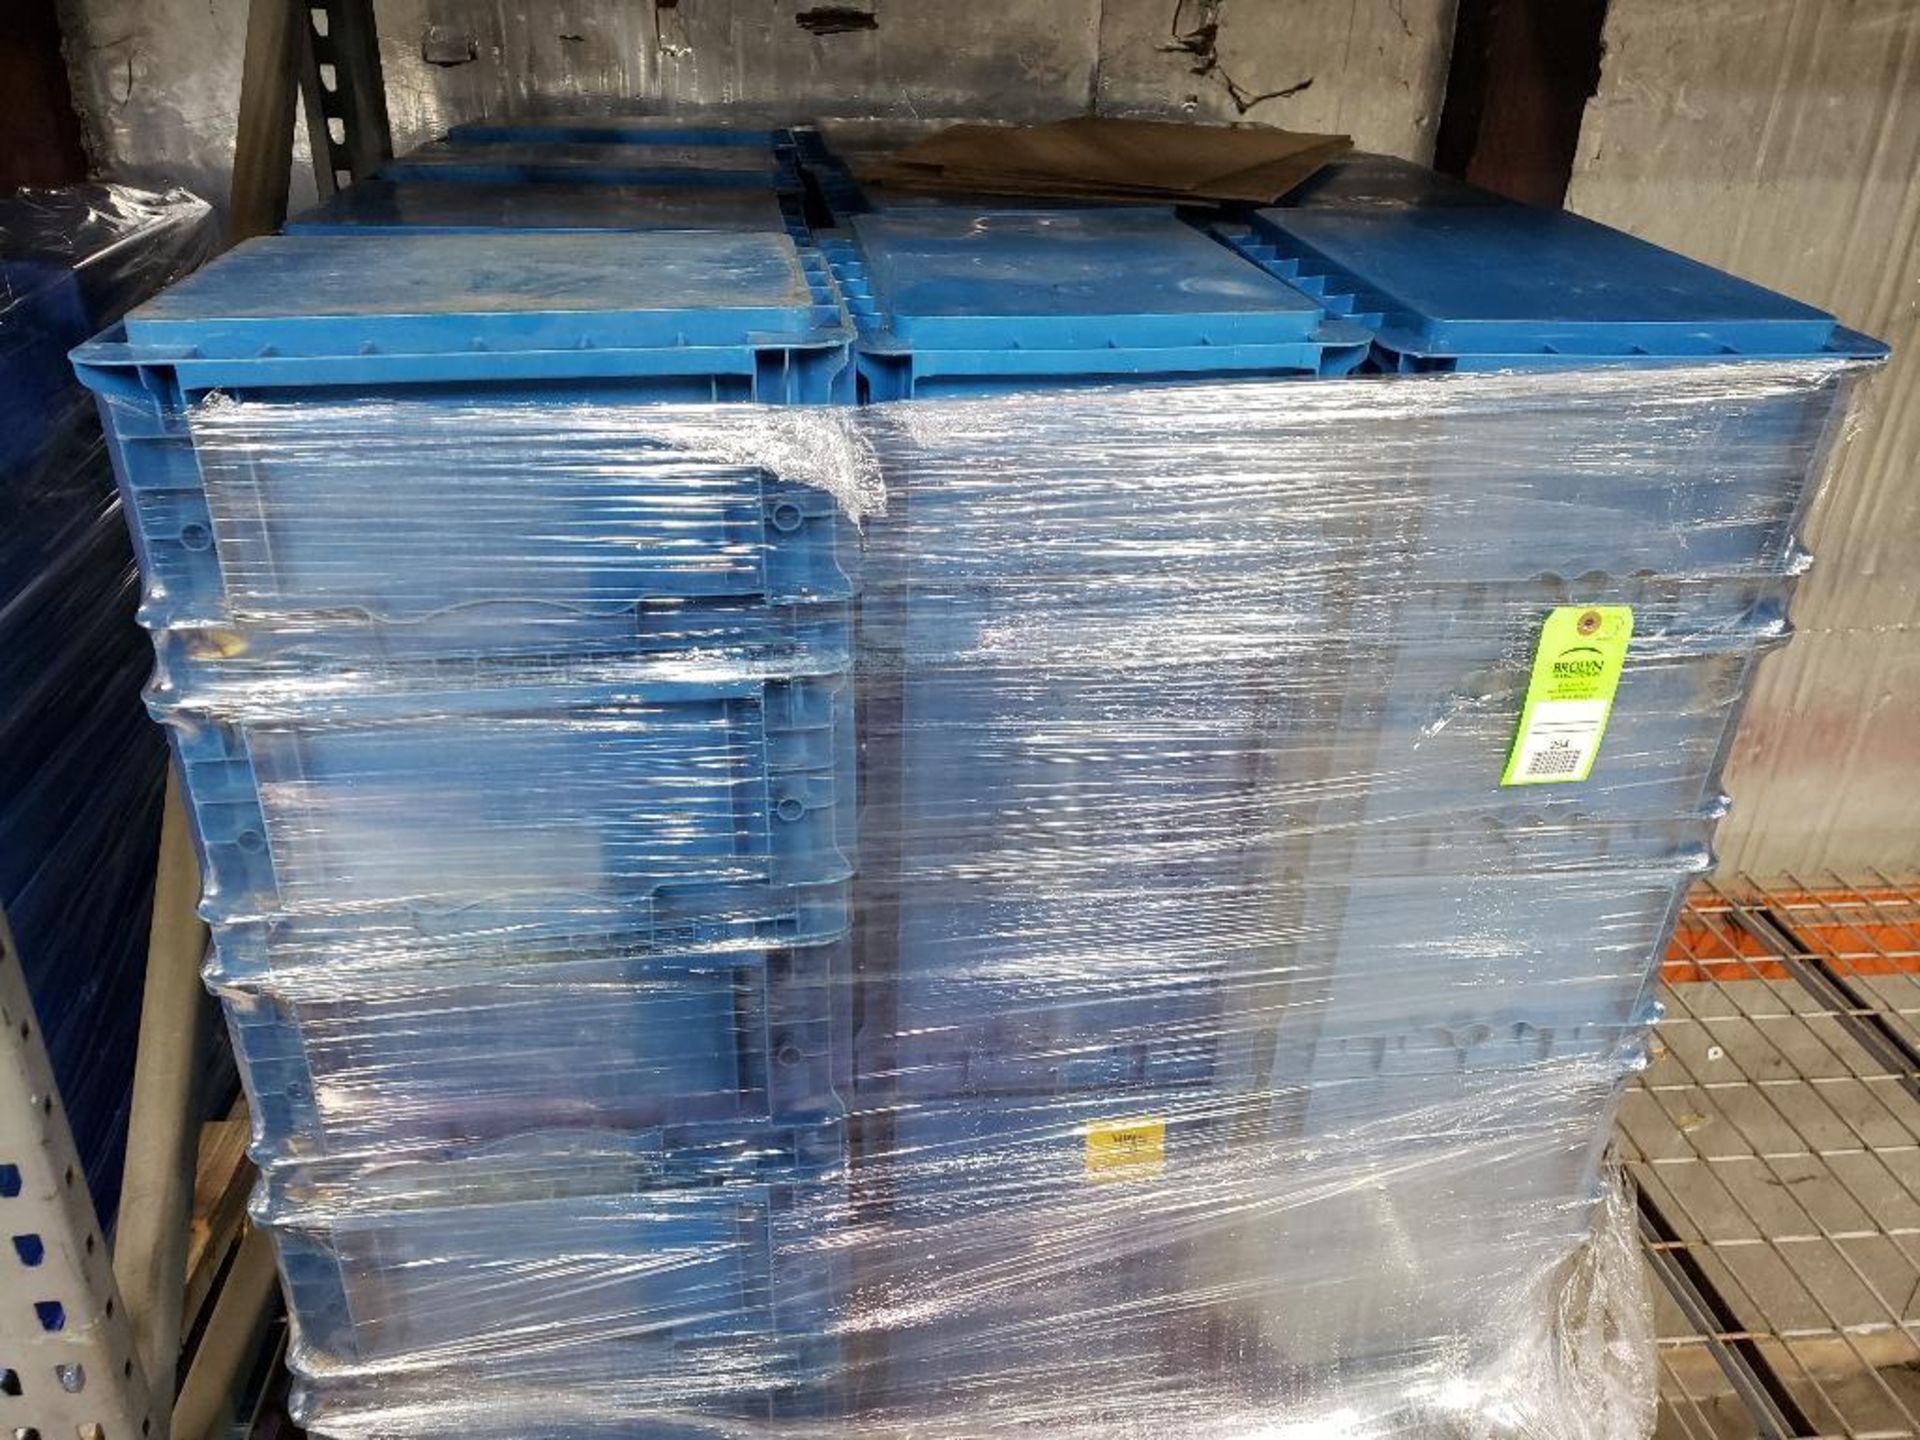 Qty 50 - plastic storage bins.